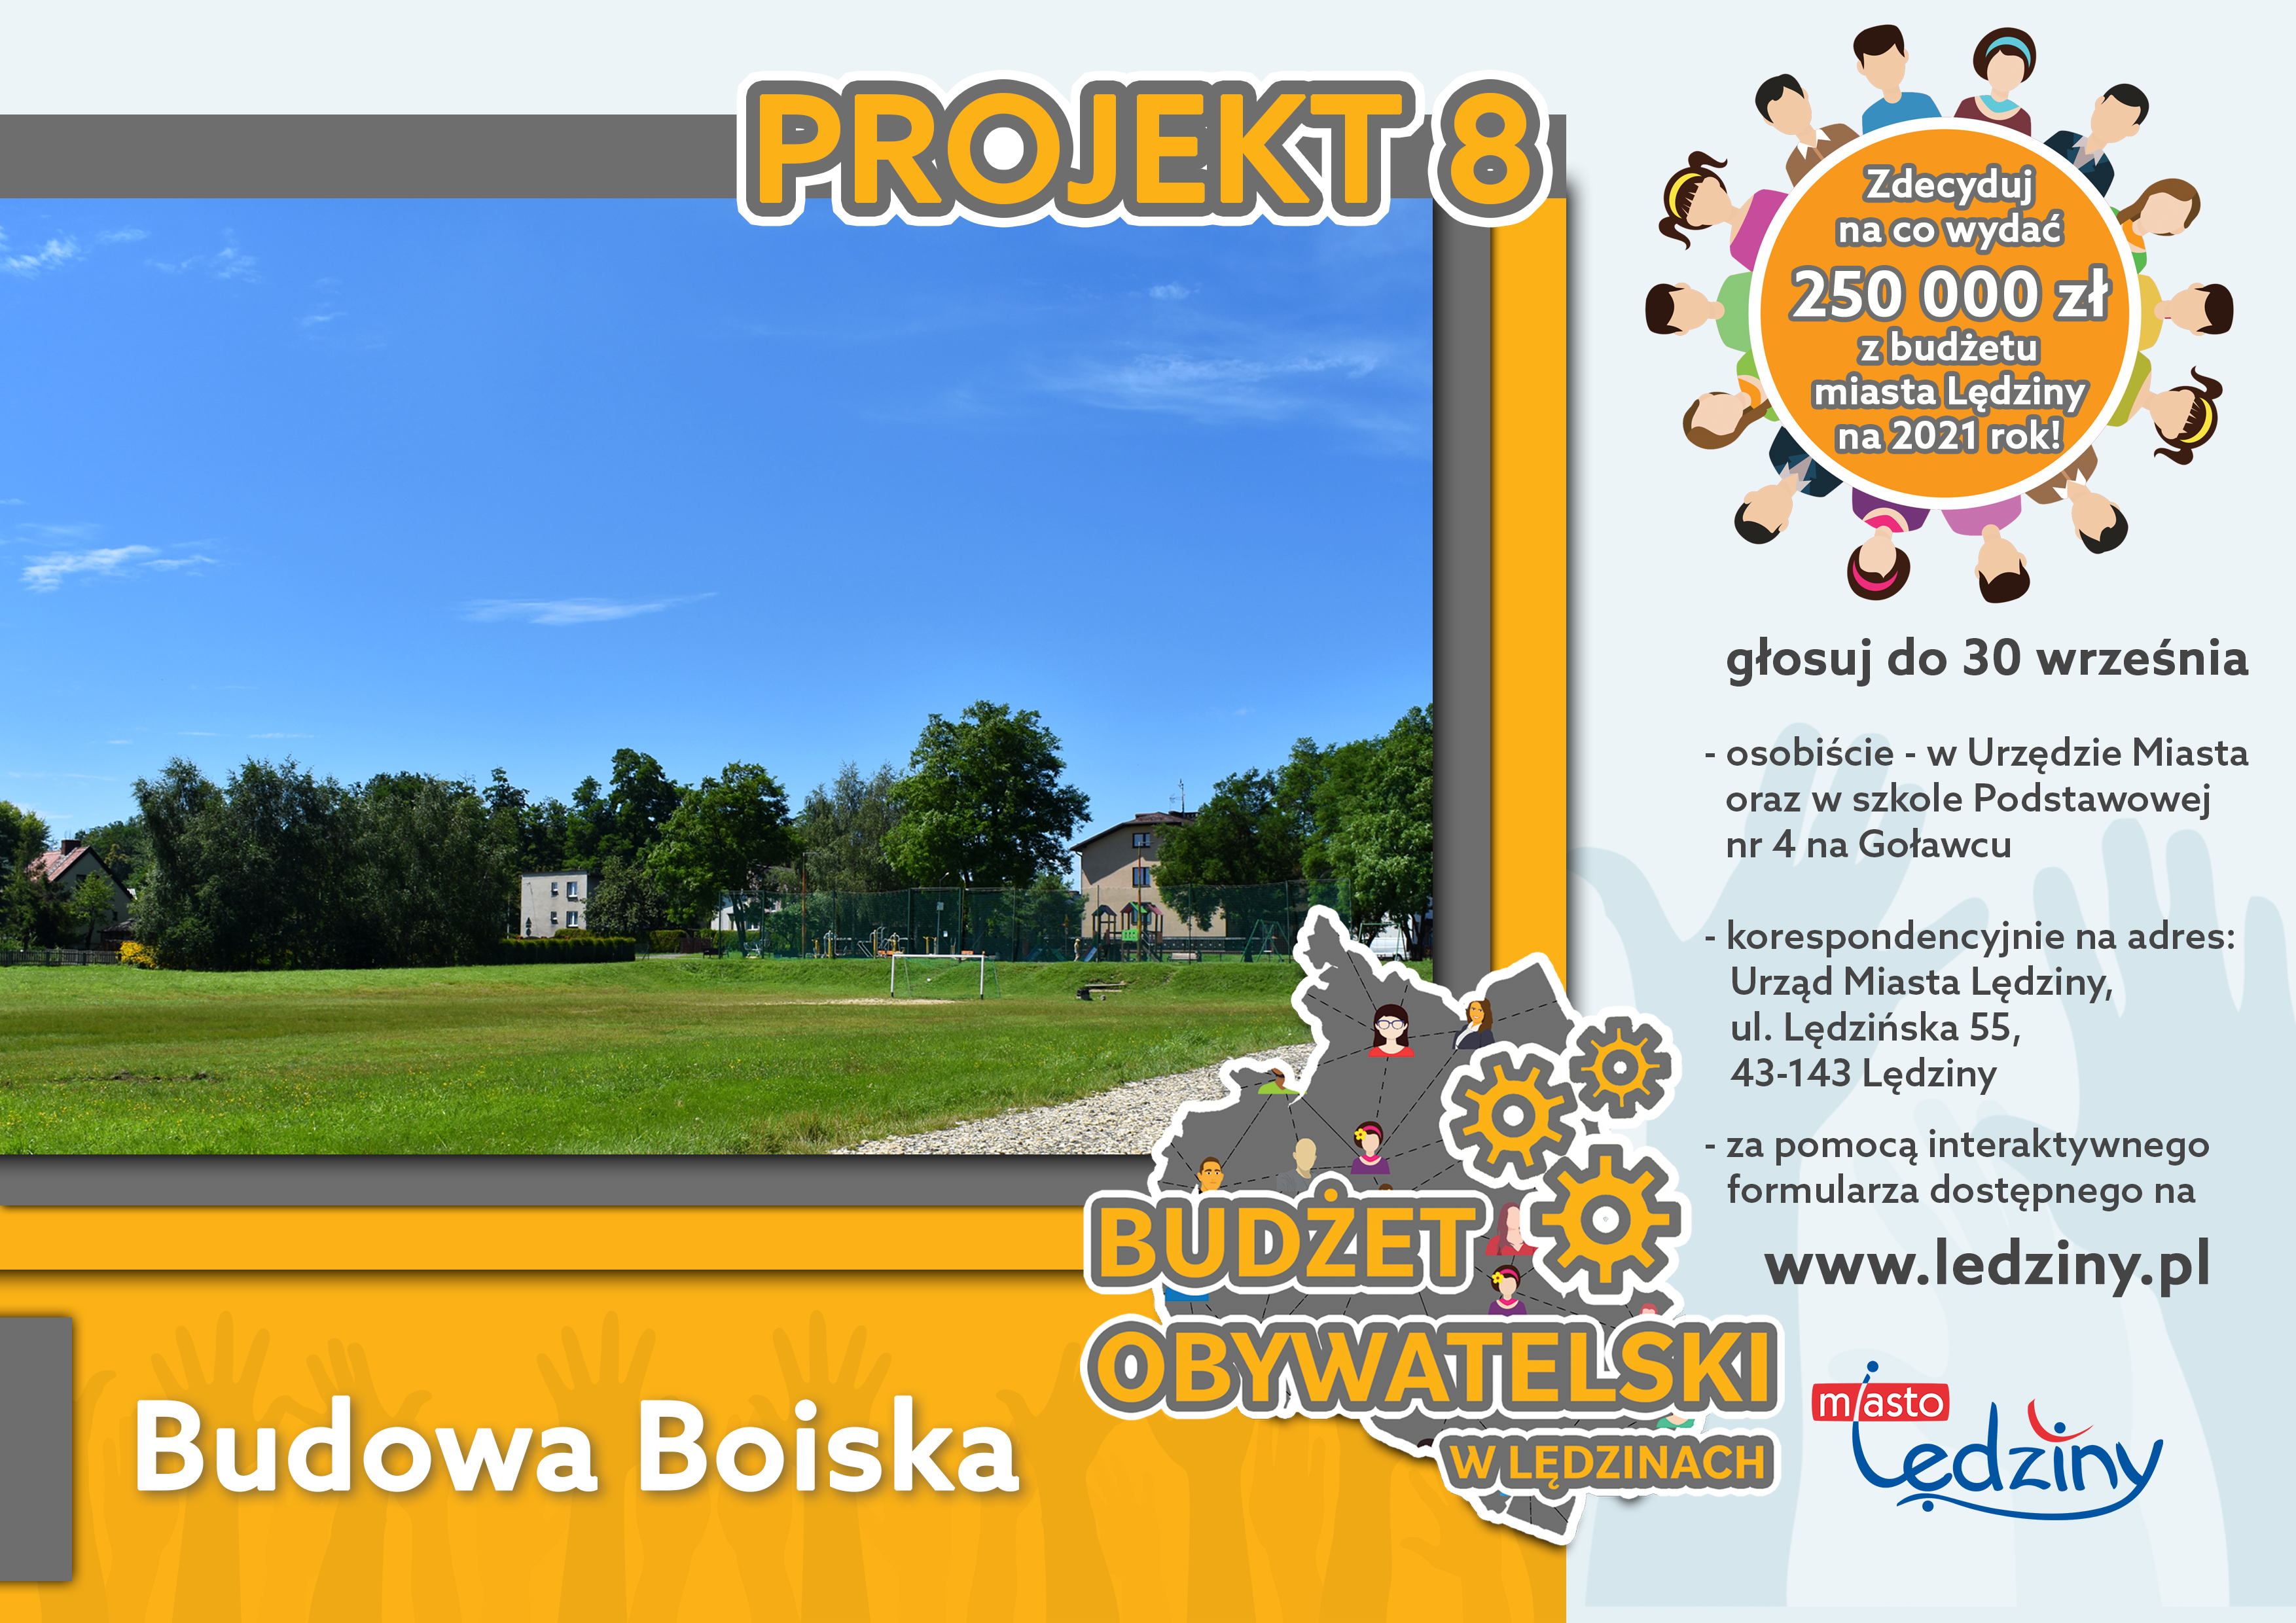 Projekt nr 8 Budżet Obywatelski - Budowa Boiska (ul. Grunwaldzka)